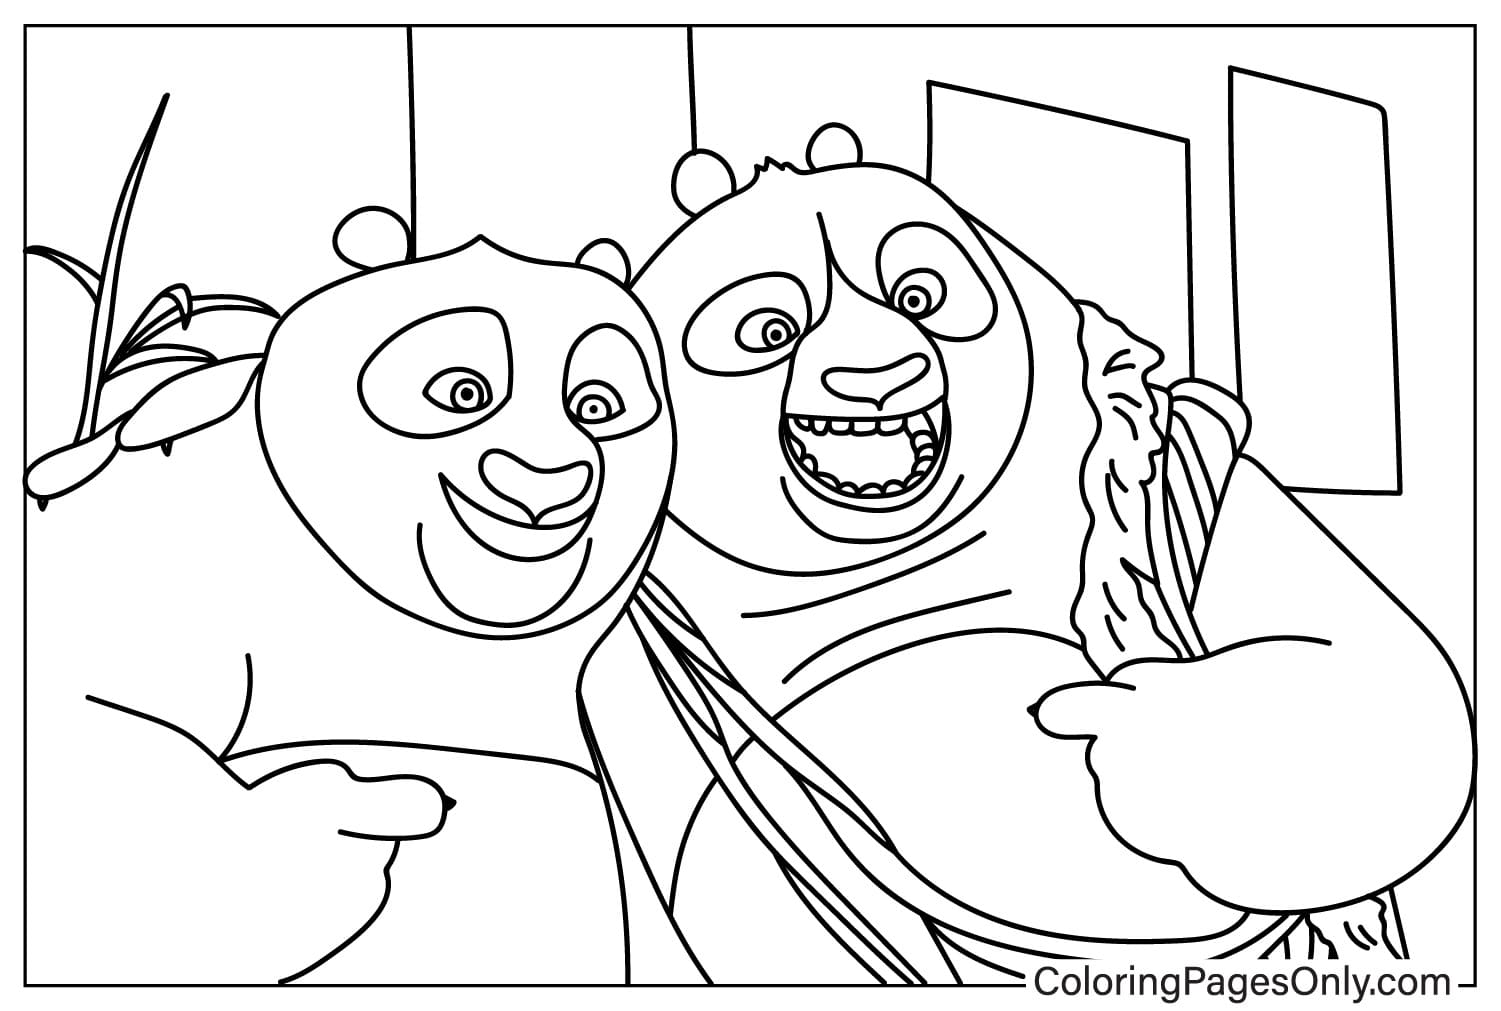 Página para colorear de Po y papá de Kung Fu Panda